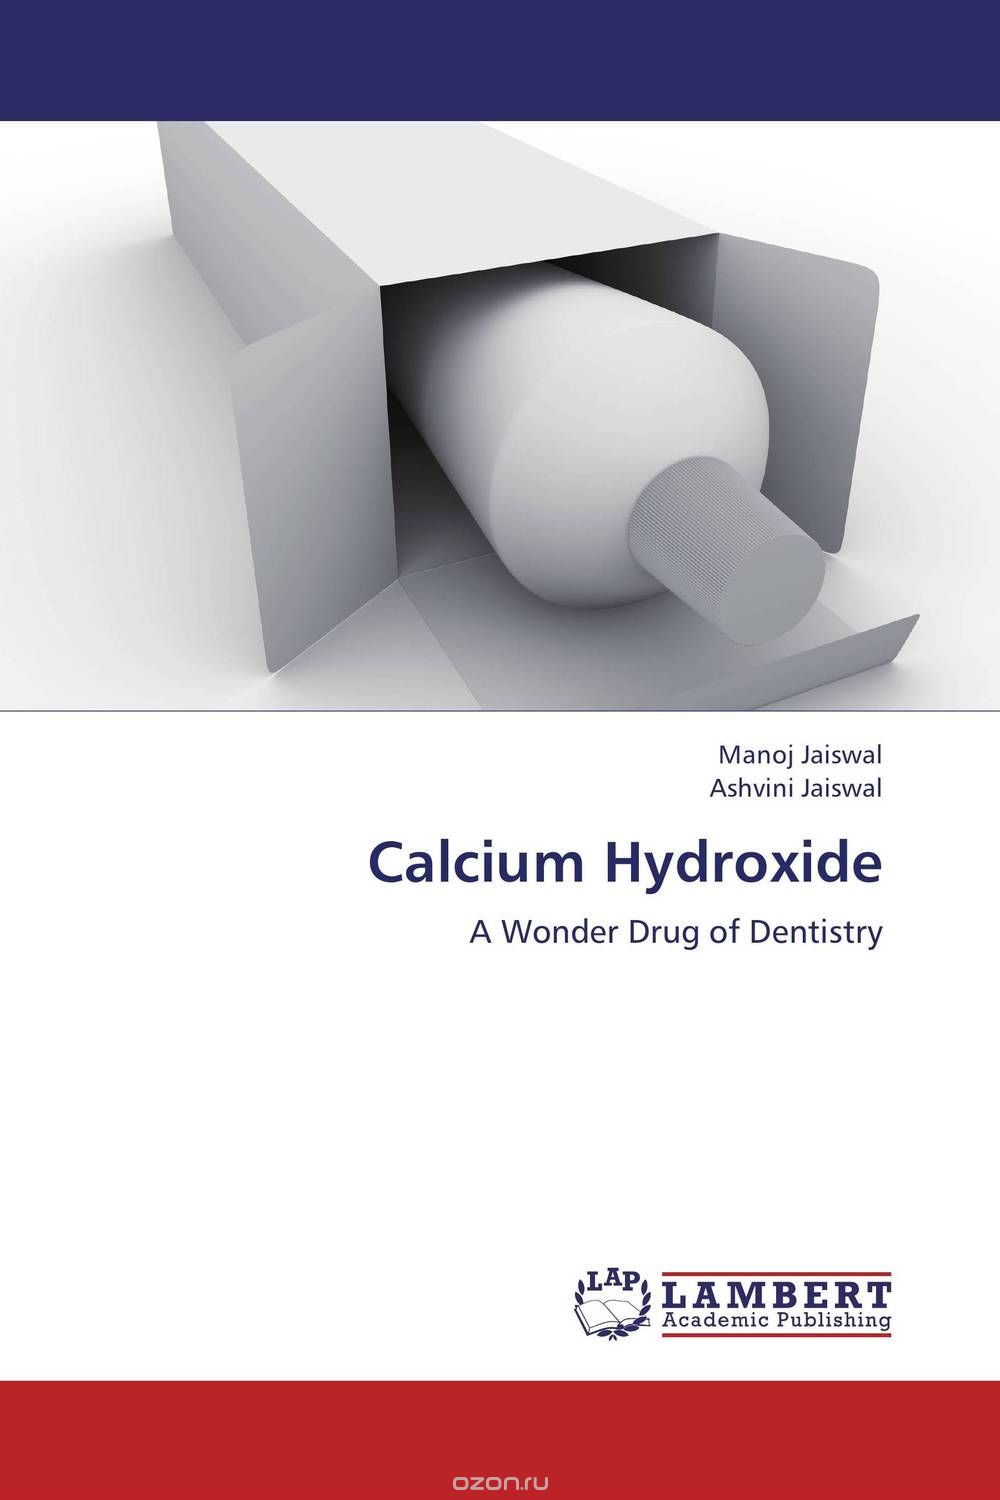 Скачать книгу "Calcium Hydroxide"